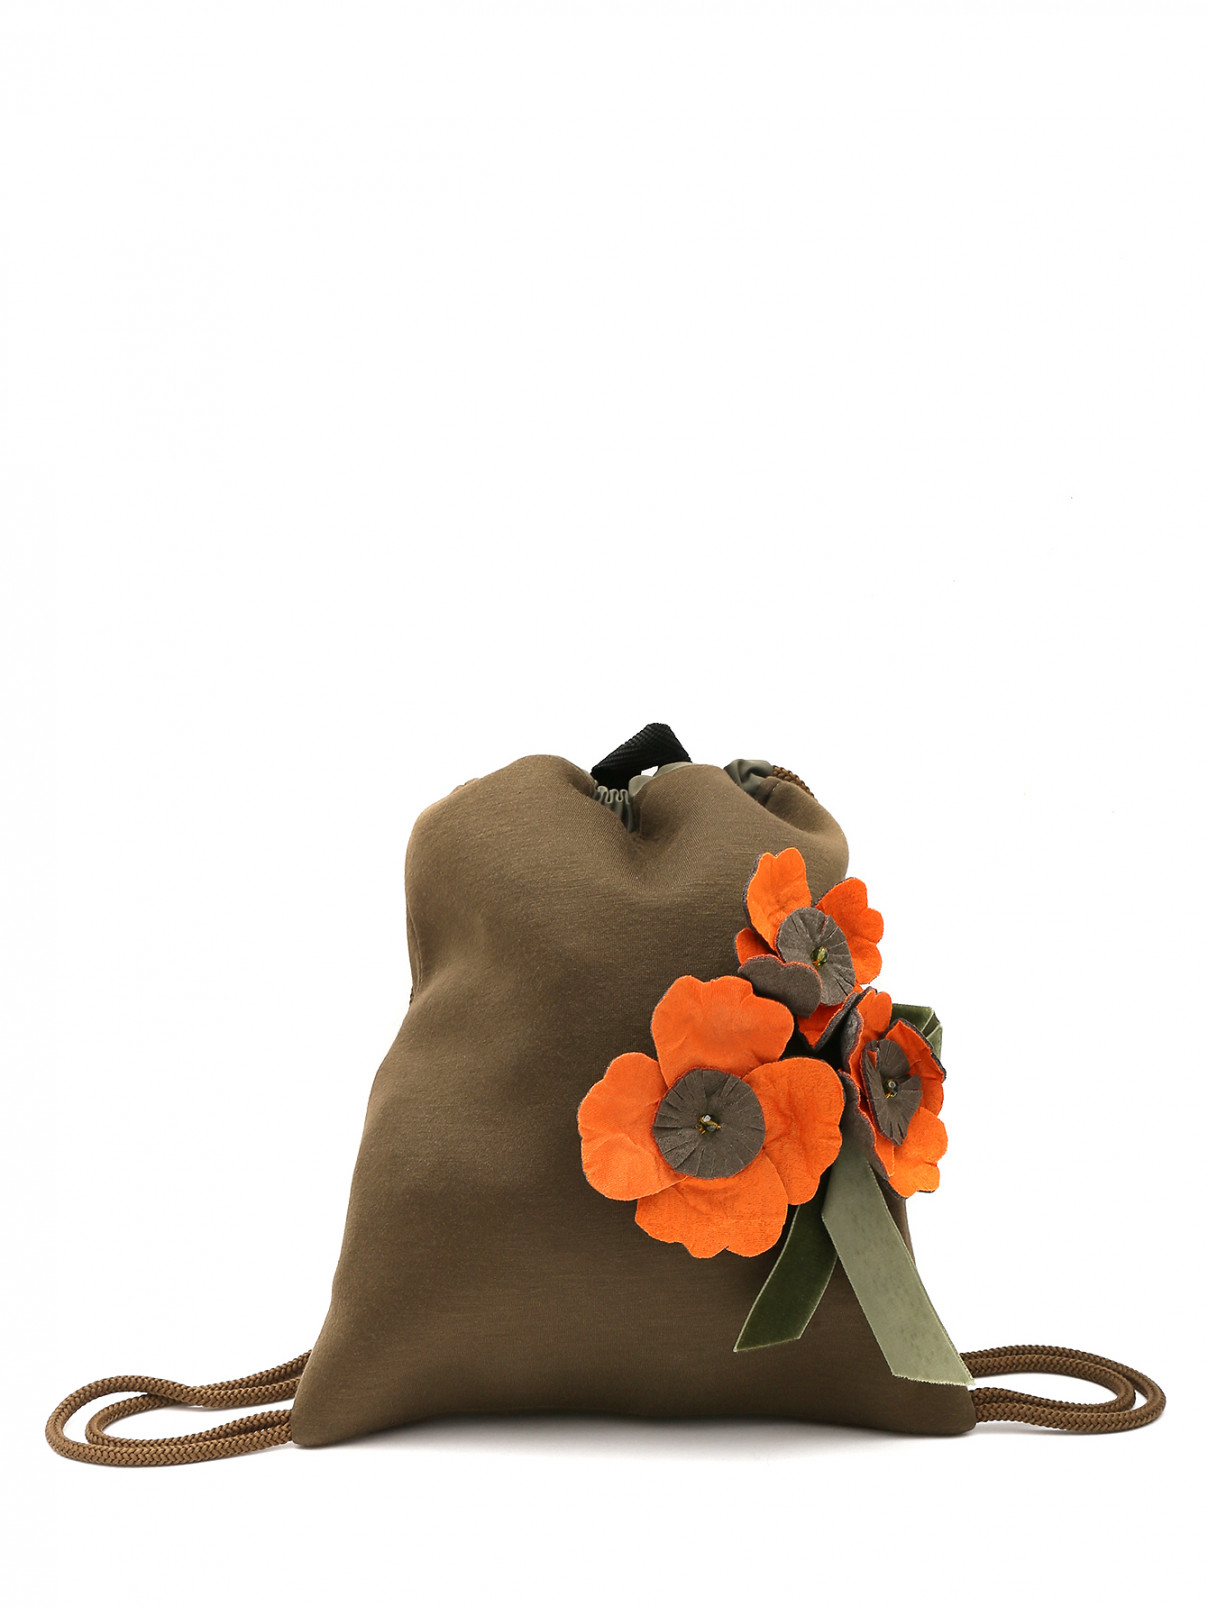 Рюкзак из текстиля с аппликацией MiMiSol  –  Общий вид  – Цвет:  Коричневый